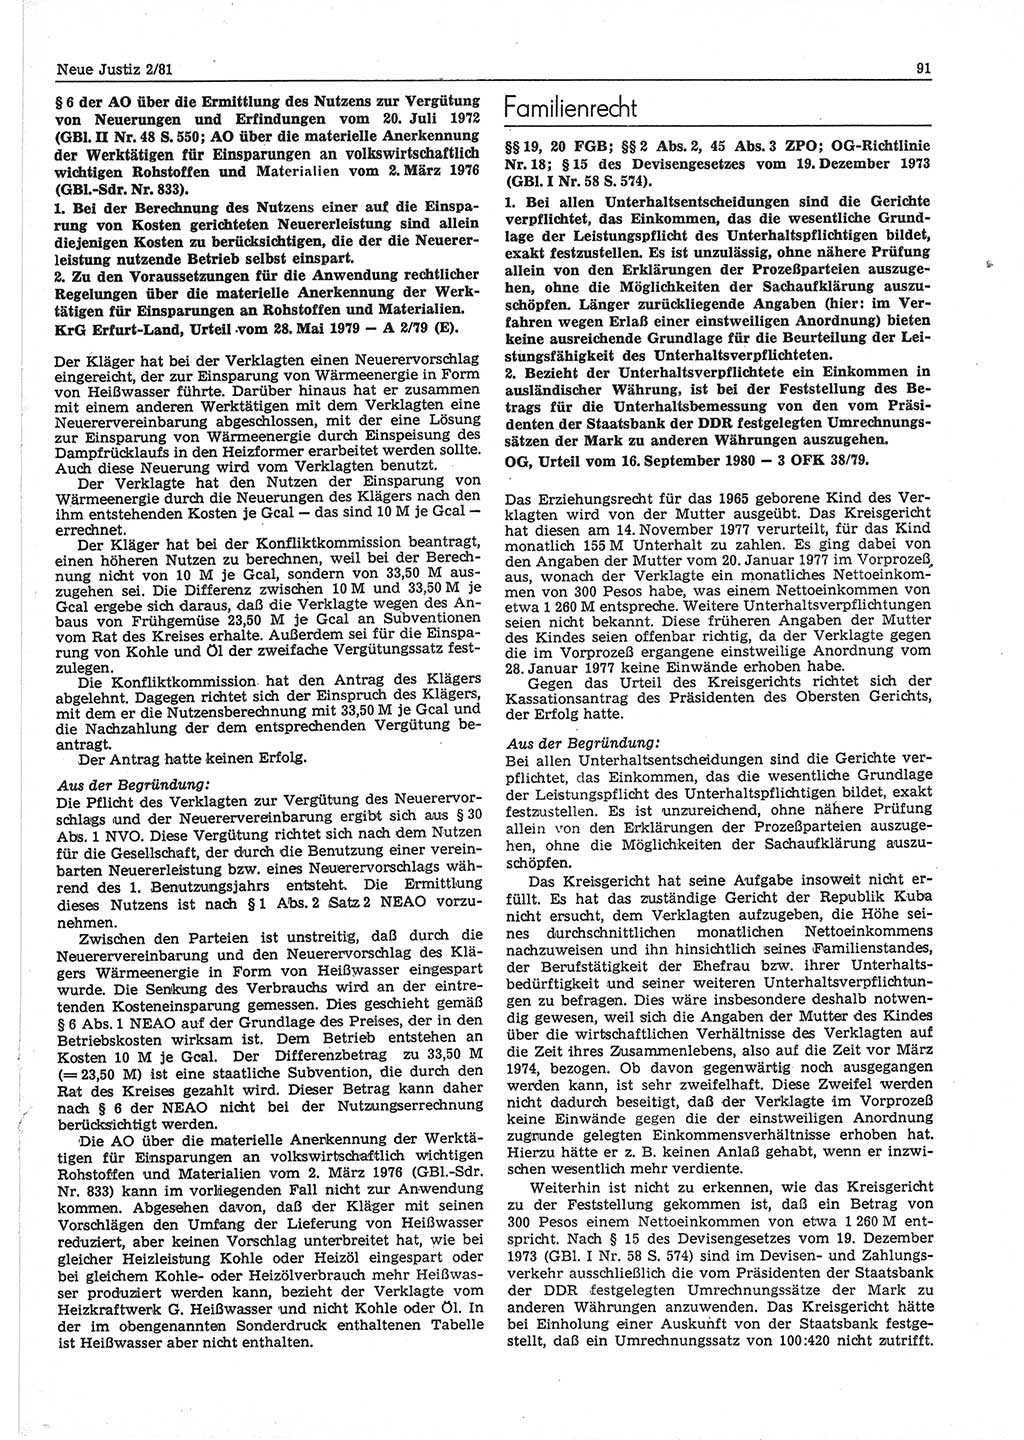 Neue Justiz (NJ), Zeitschrift für sozialistisches Recht und Gesetzlichkeit [Deutsche Demokratische Republik (DDR)], 35. Jahrgang 1981, Seite 91 (NJ DDR 1981, S. 91)